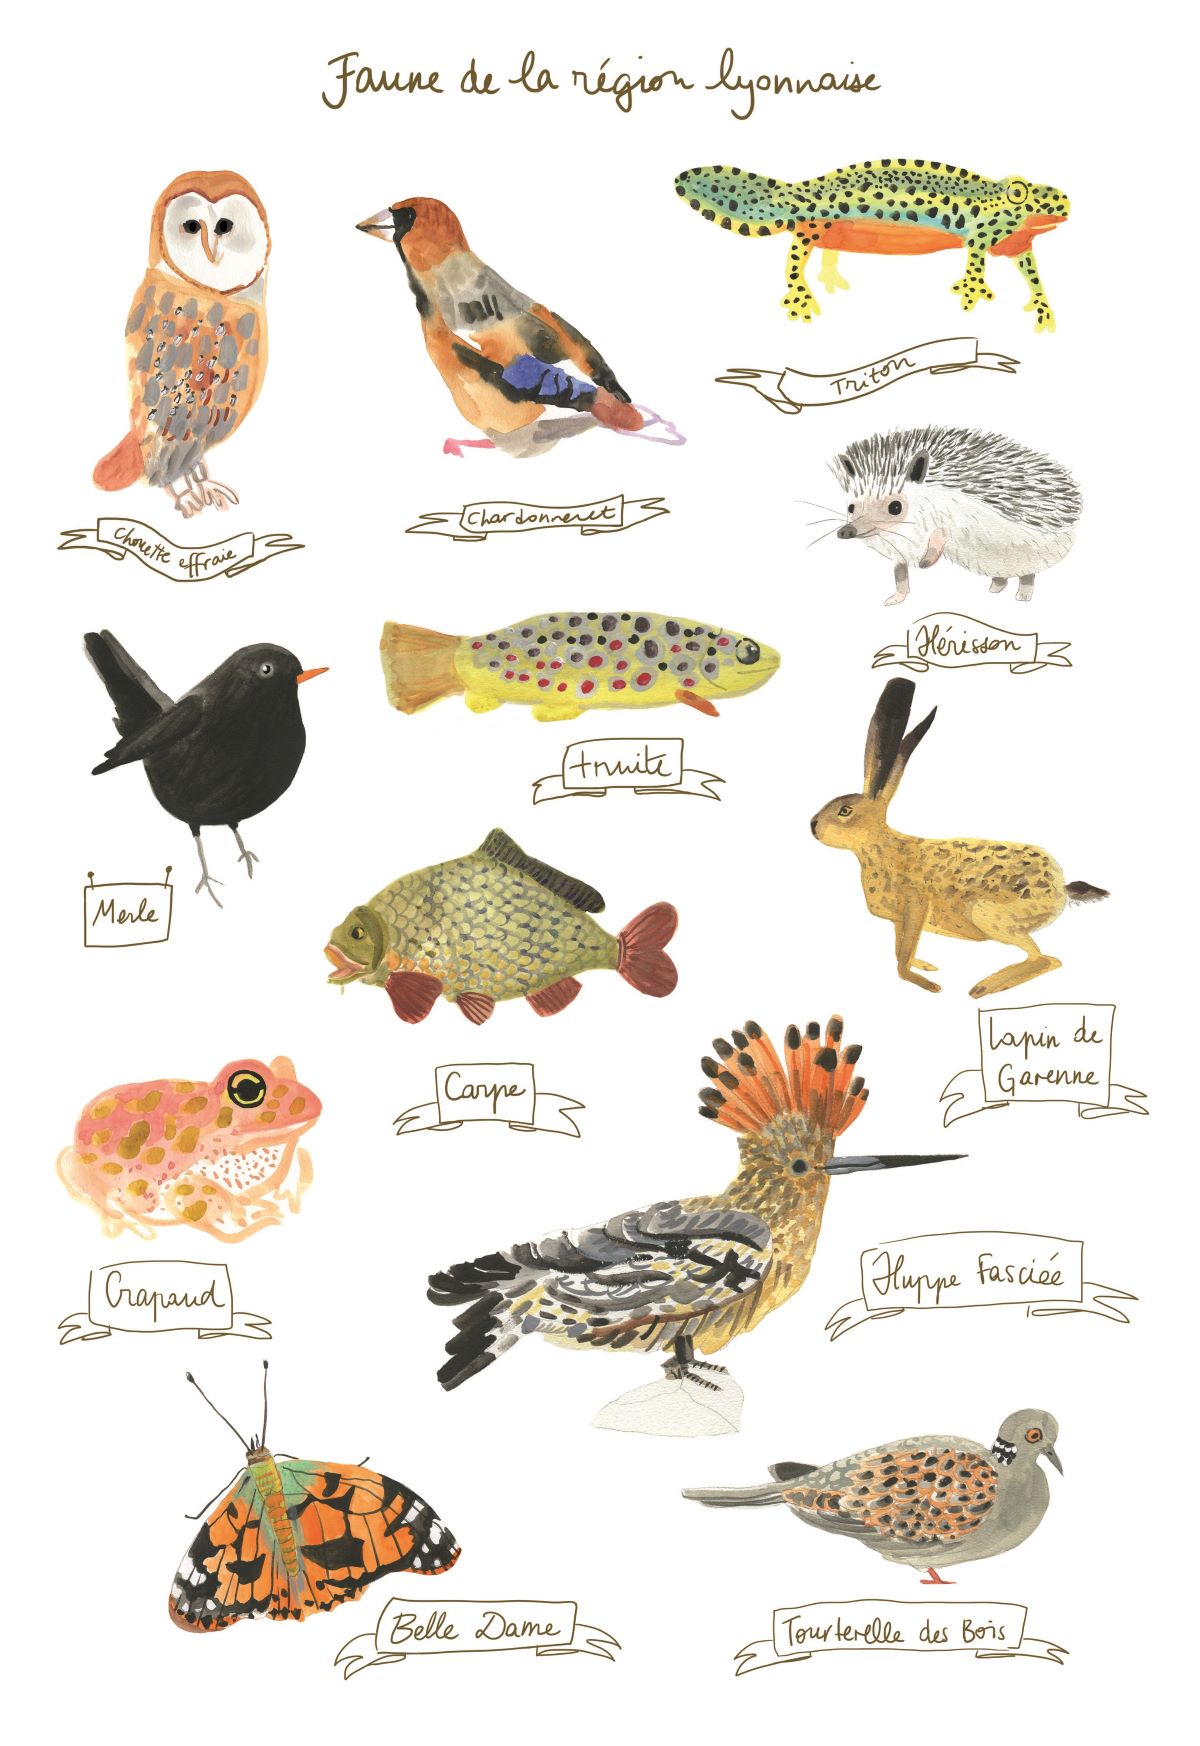 Illustrations à l'aquarelle des animaux vivant dans le rhone